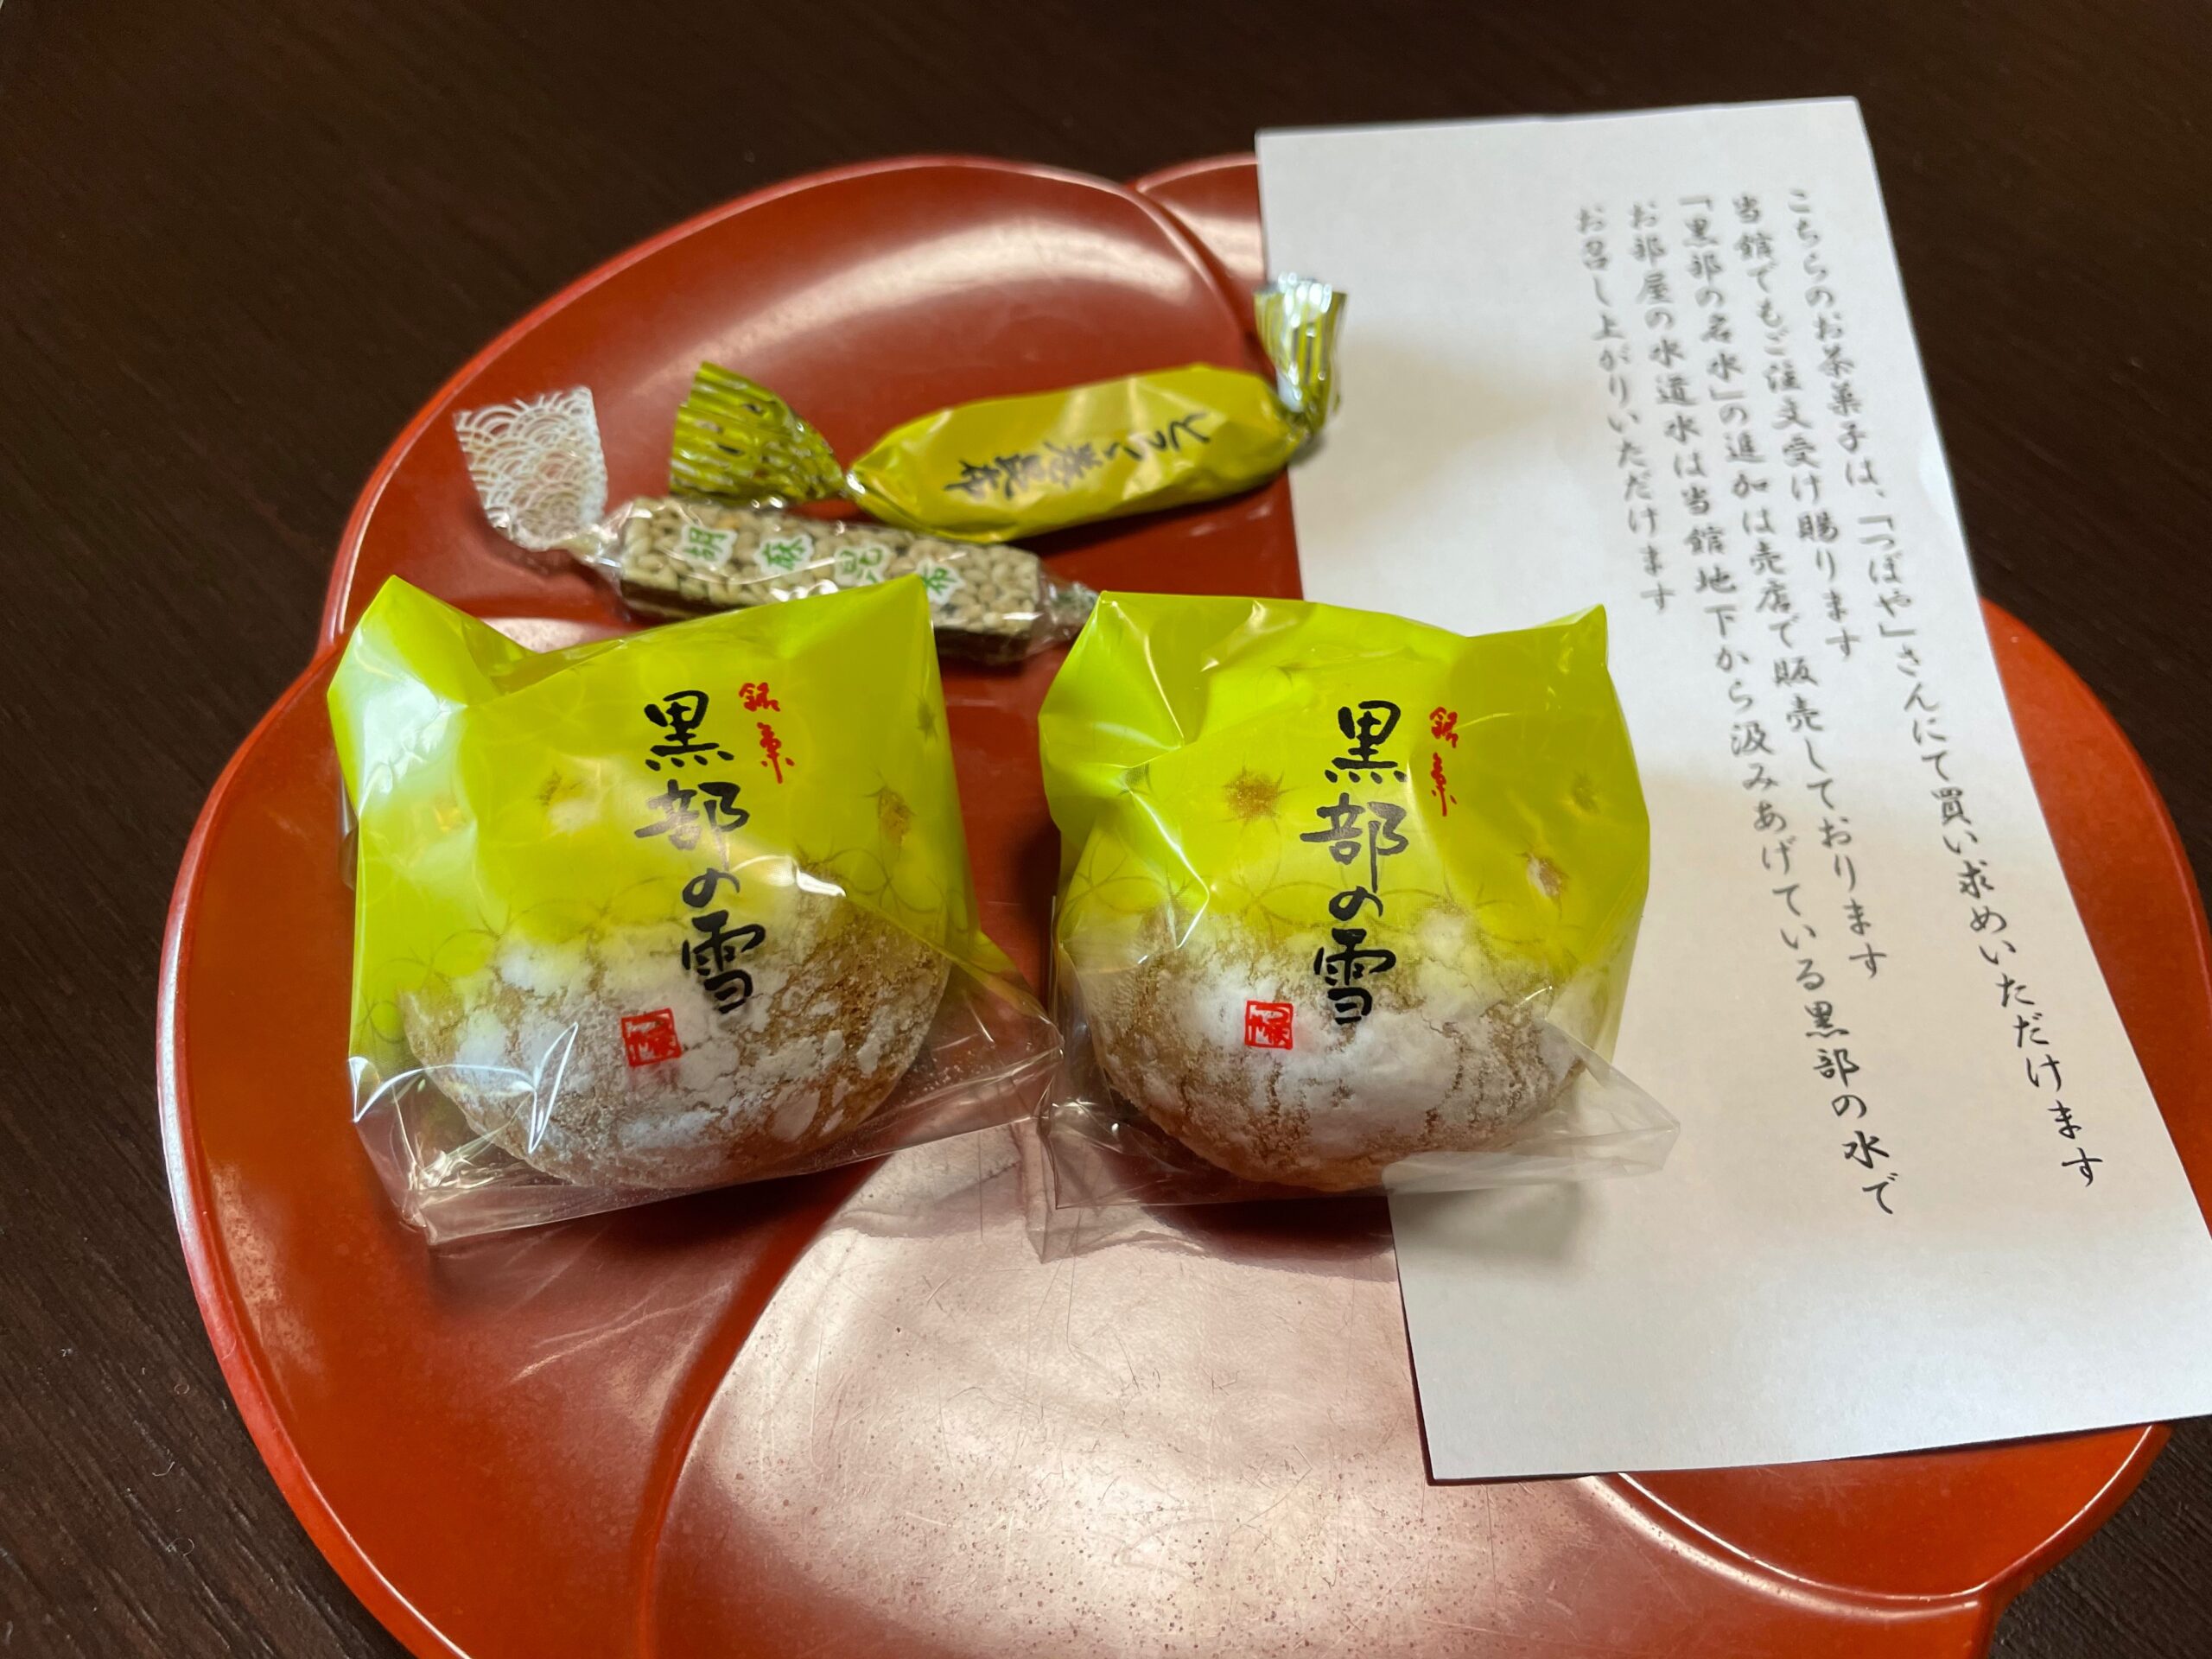 宇奈月温泉 桃源 おやつ和菓子